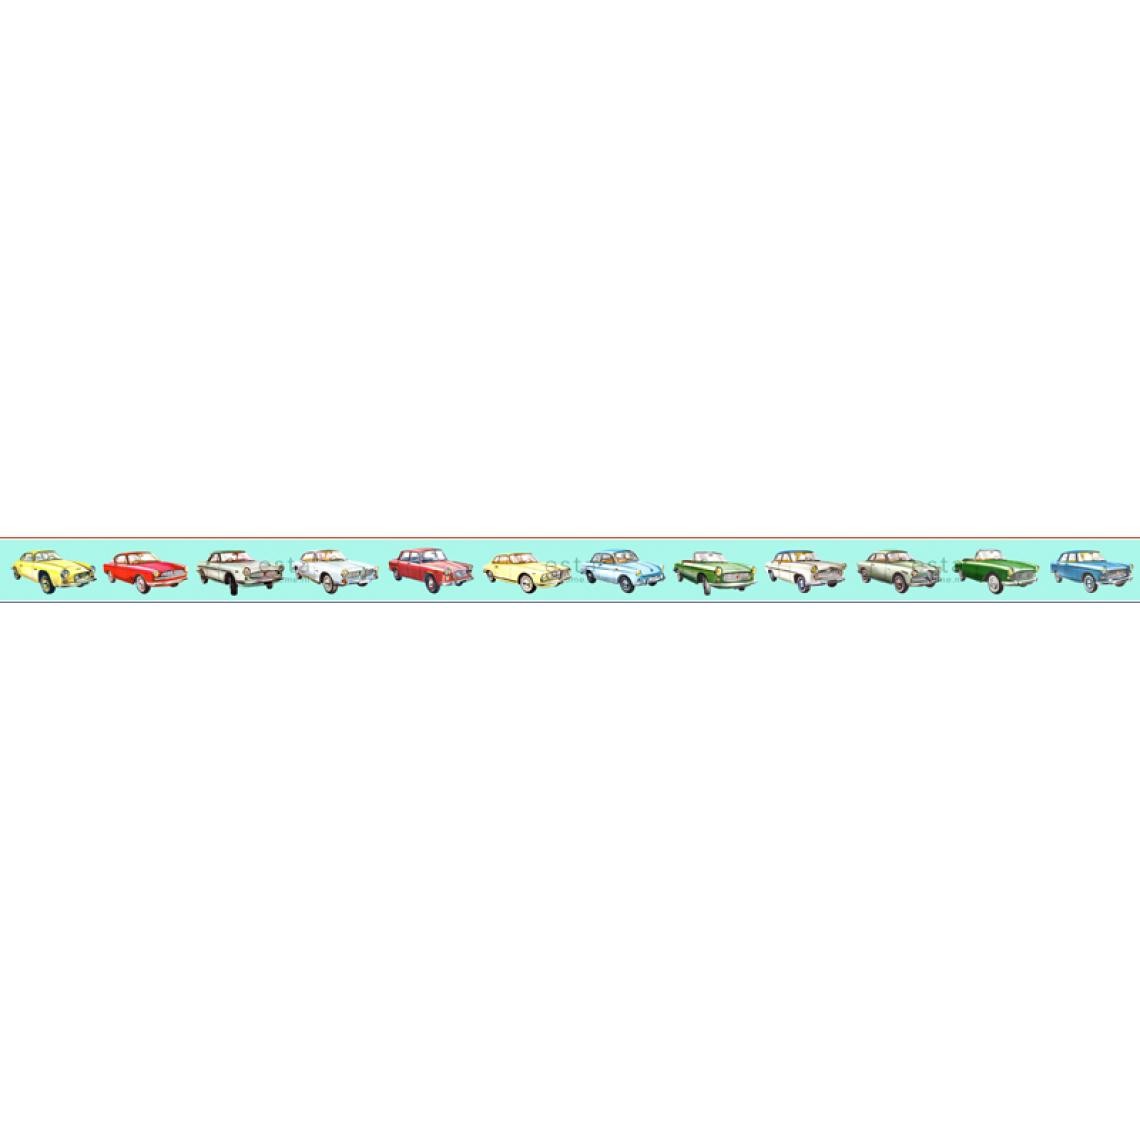 ESTAhome - ESTAhome frise papier peint intissé XXL voitures turquoise, jaune, rouge et vert - 158711 - 400 cm x 23,25 cm - Papier peint